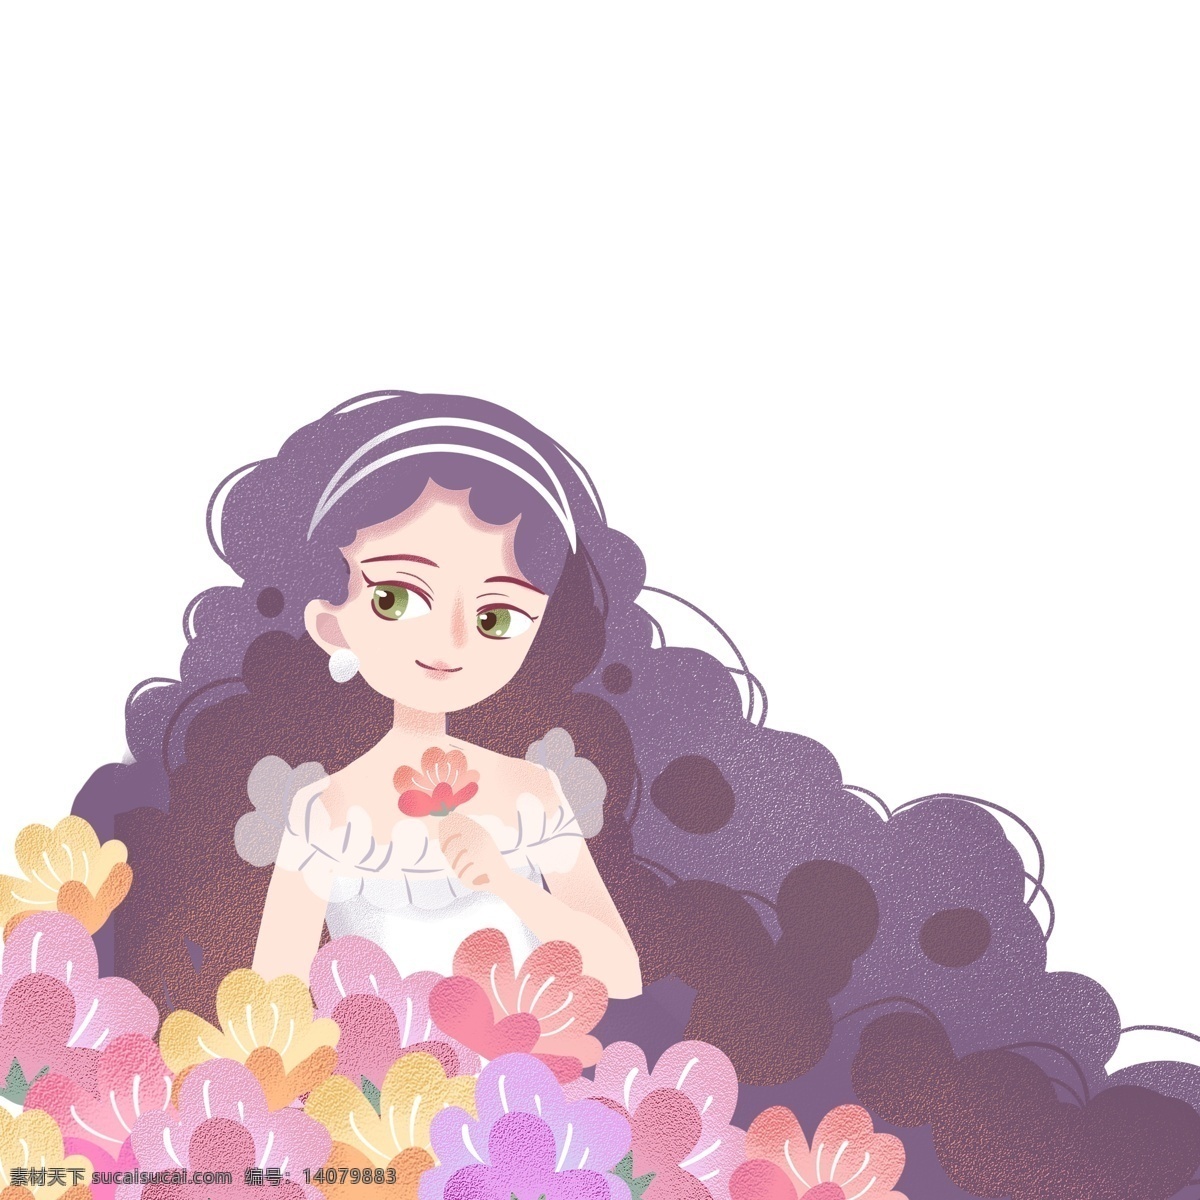 花丛 中 漂亮 紫色 头发 女孩 卡通 花 卷 仙女 花仙子